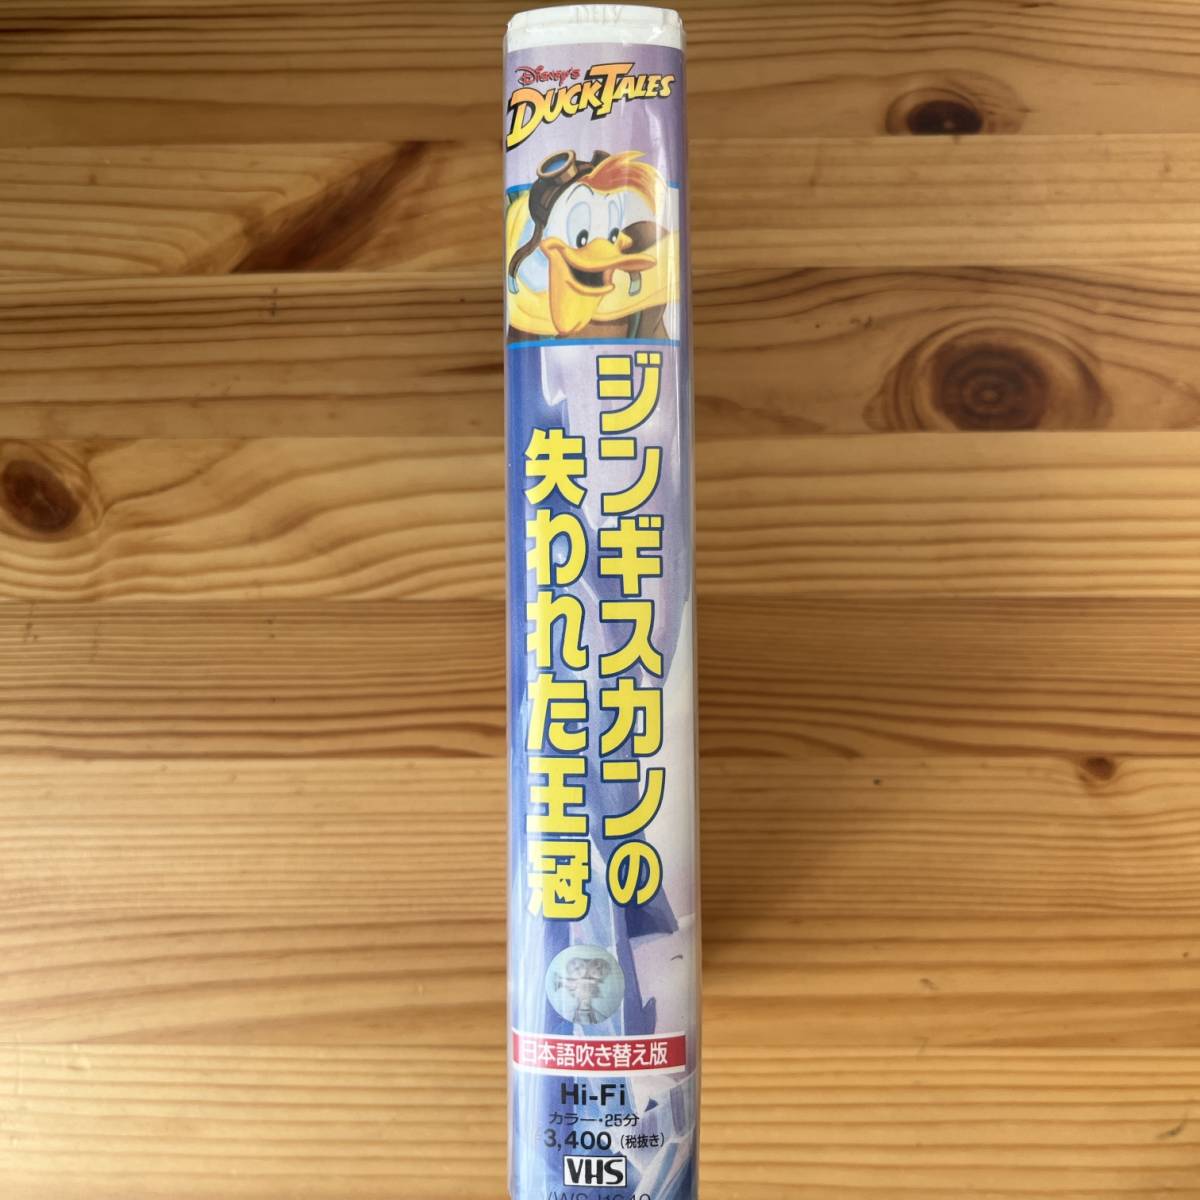 VHS Disney Duck Tales Чингисхан. . трещина ... японский язык дуть . изменение версия VWSJ1640